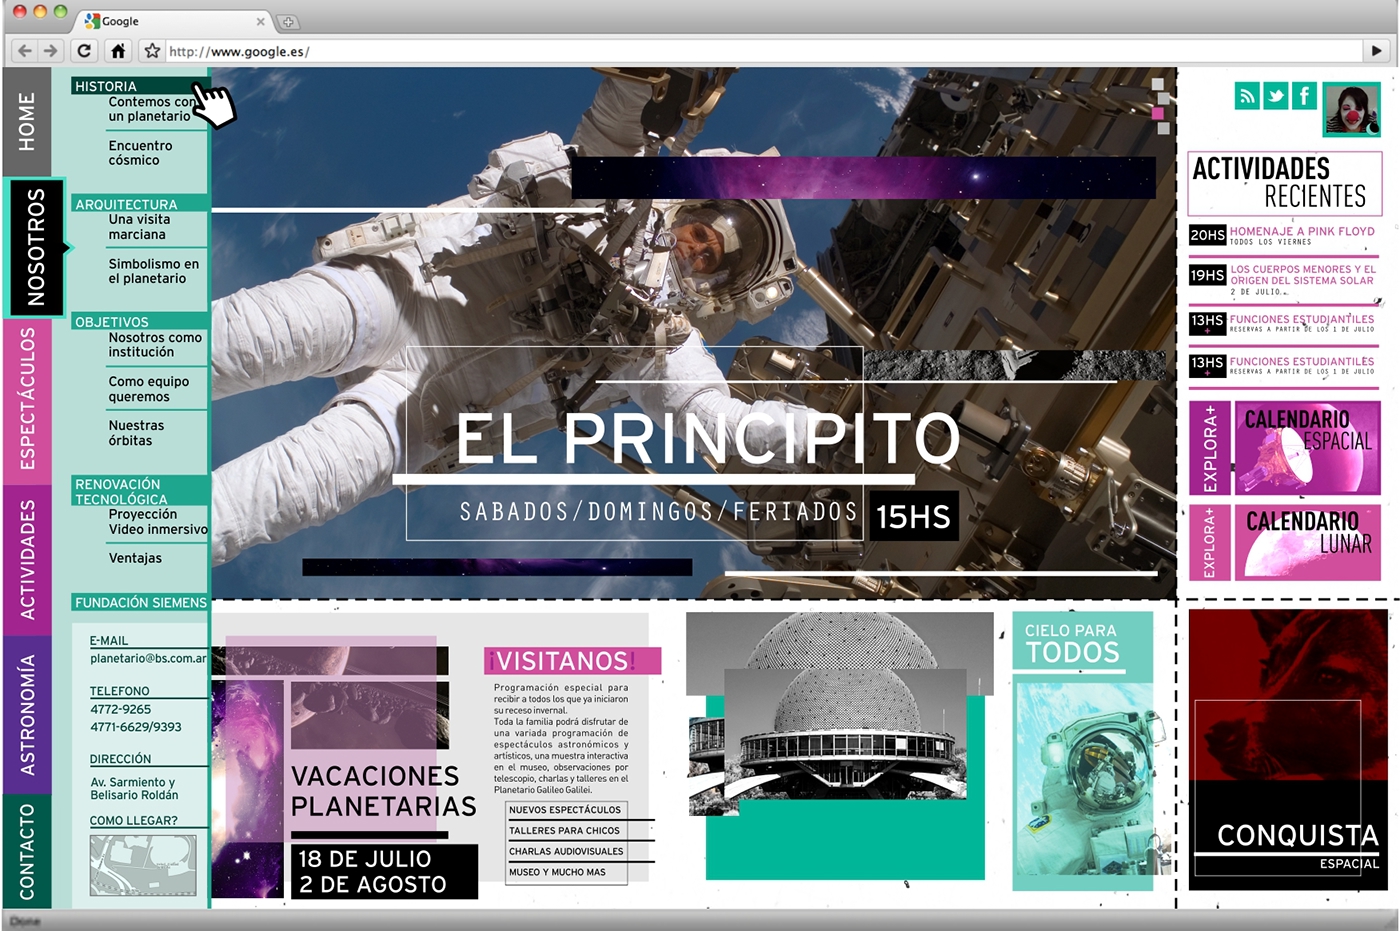 Web Planetario Planetario Buenos Aires diseño ux diseño interactivo diseño multimedial